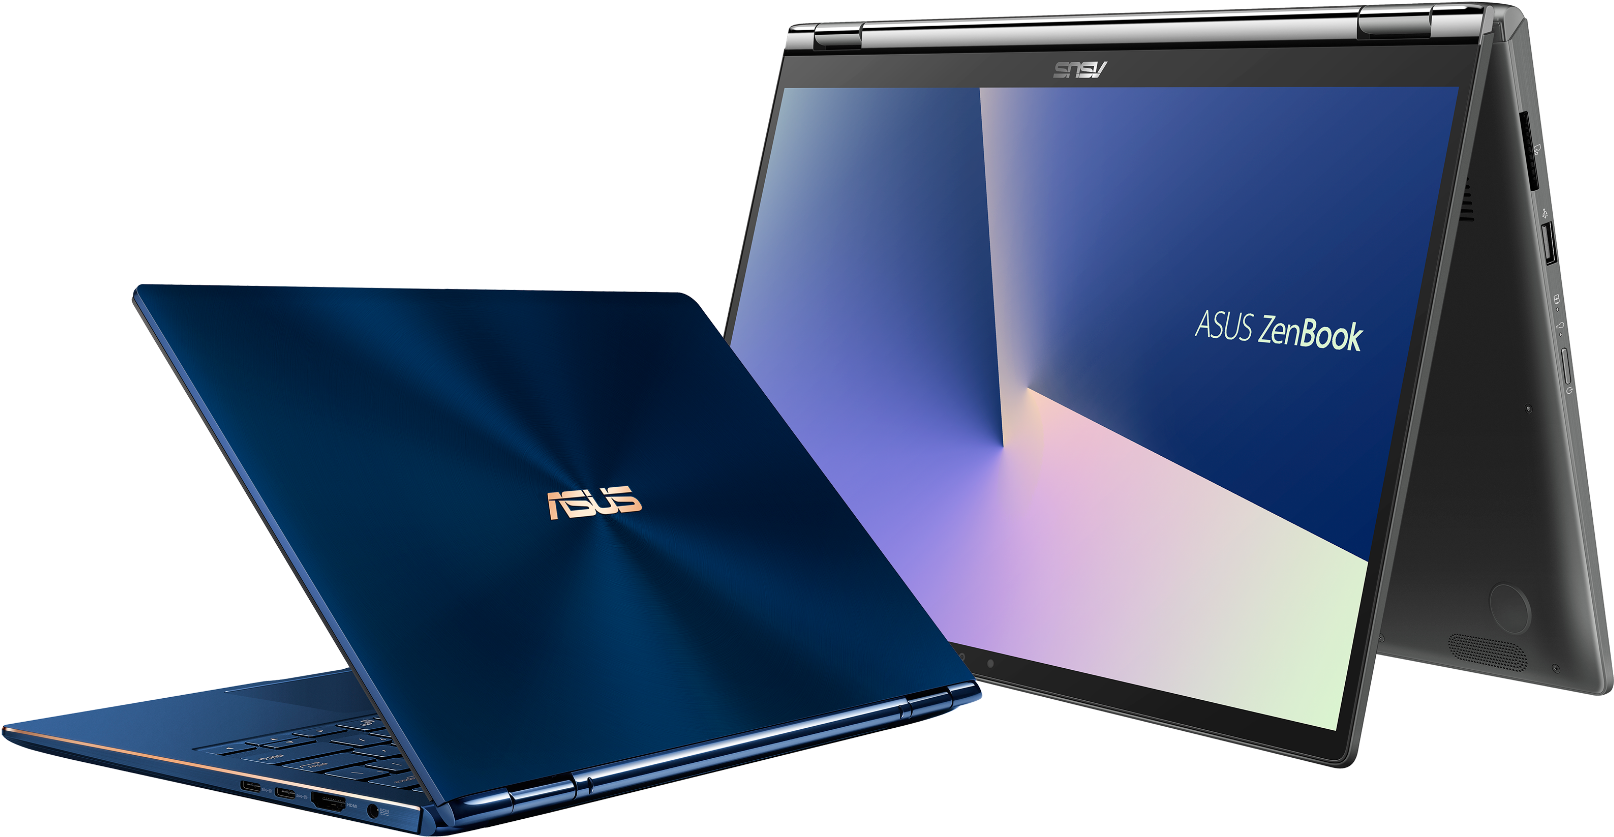 ASUS ZenBook Repairs ANU